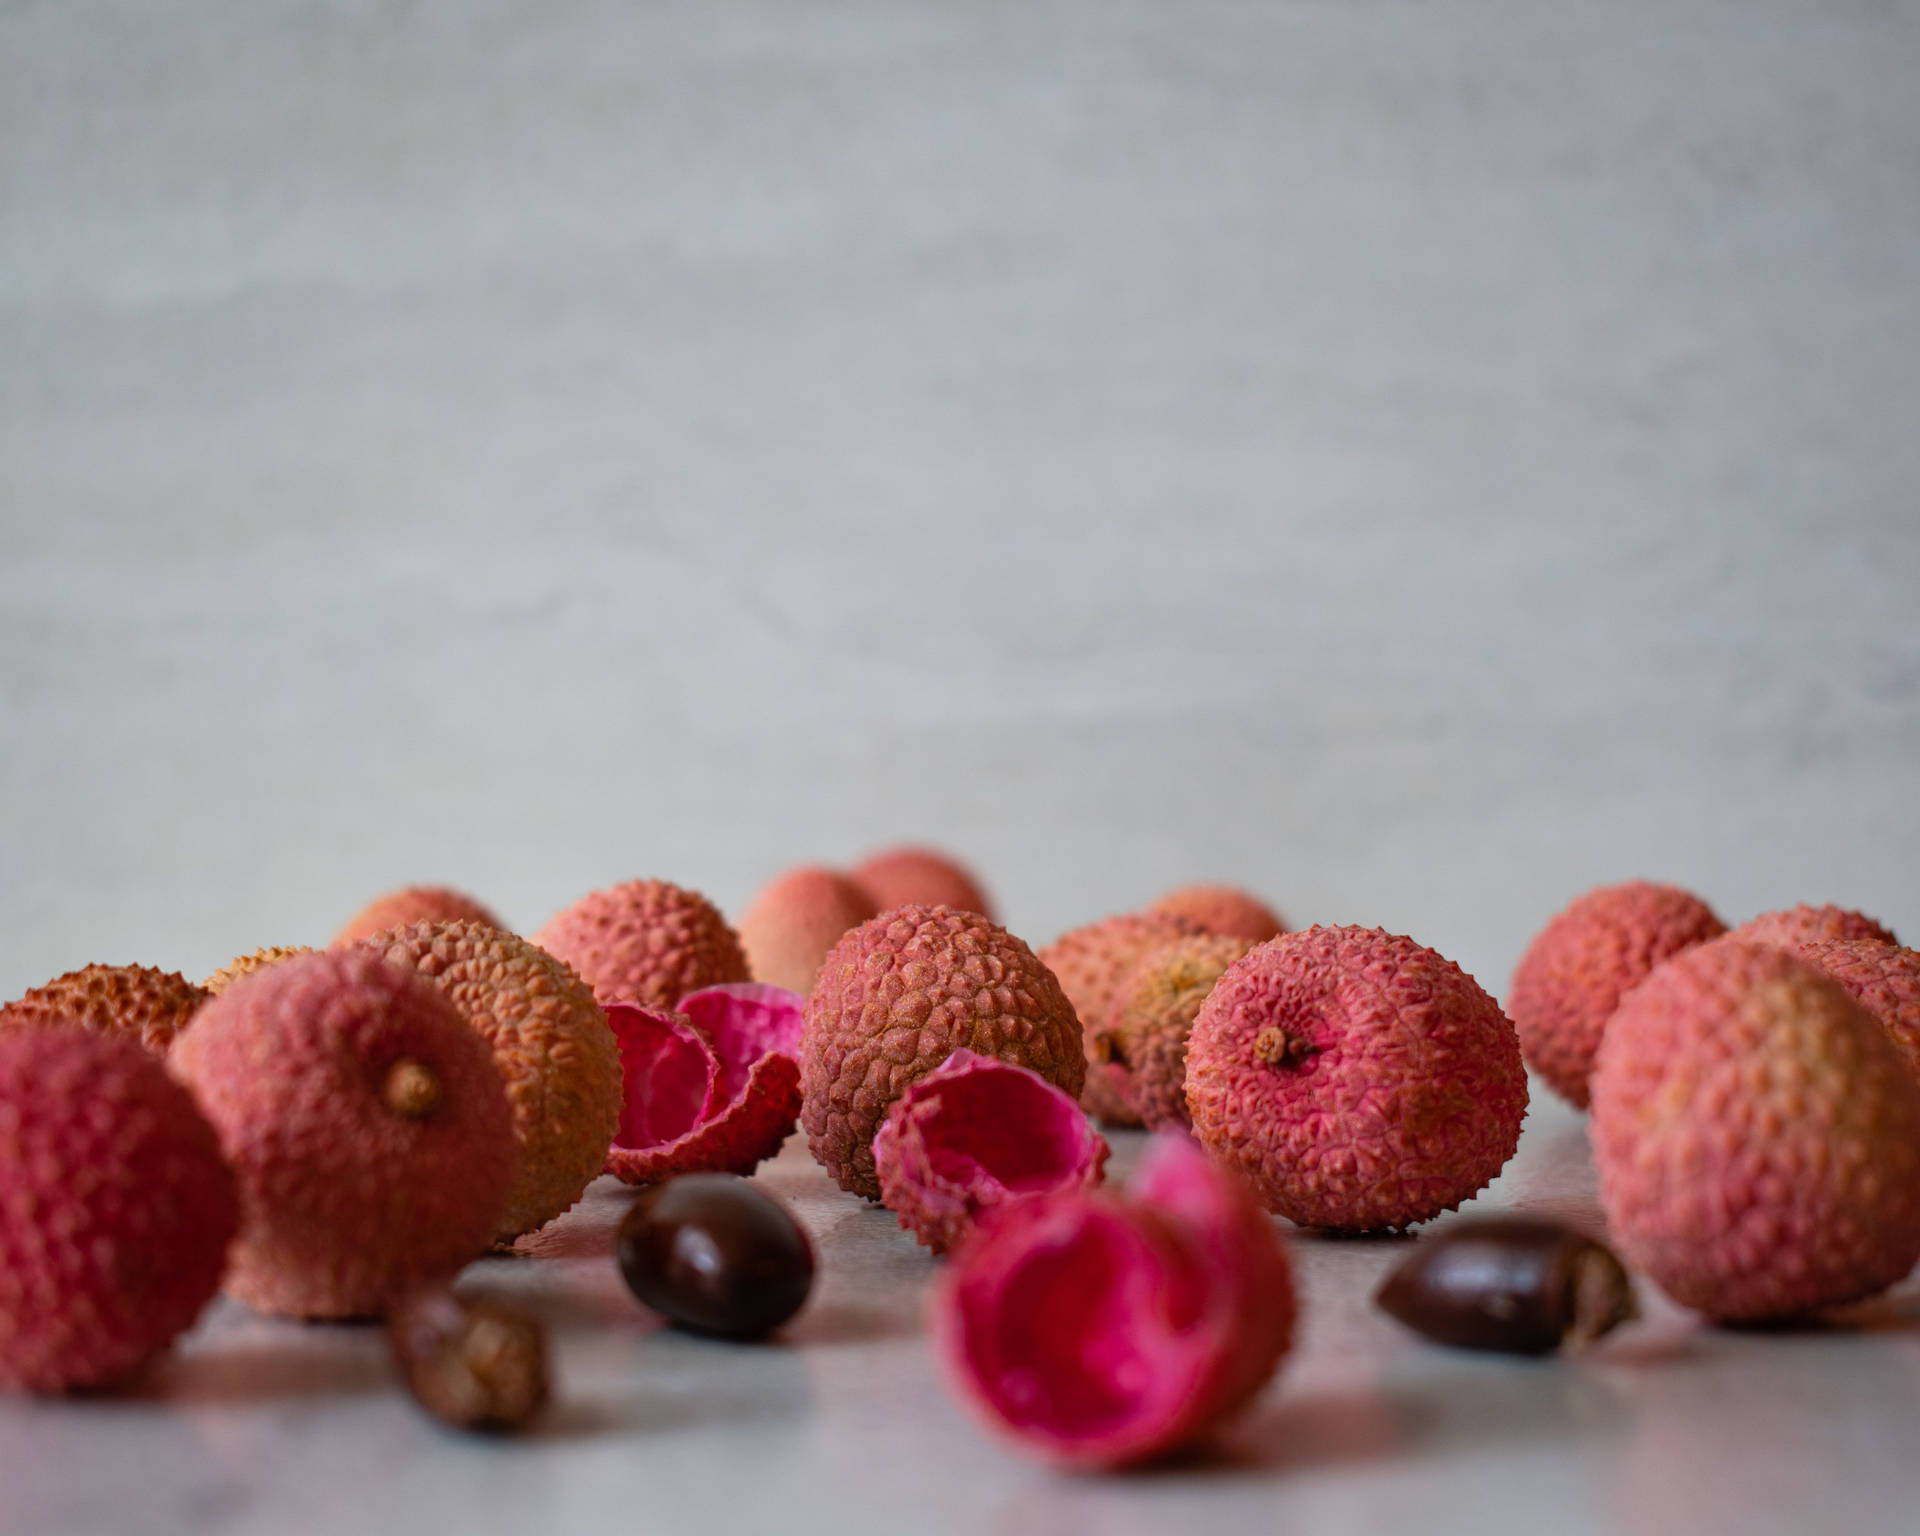 Rosalychee-früchte Schalen Und Samen. Wallpaper